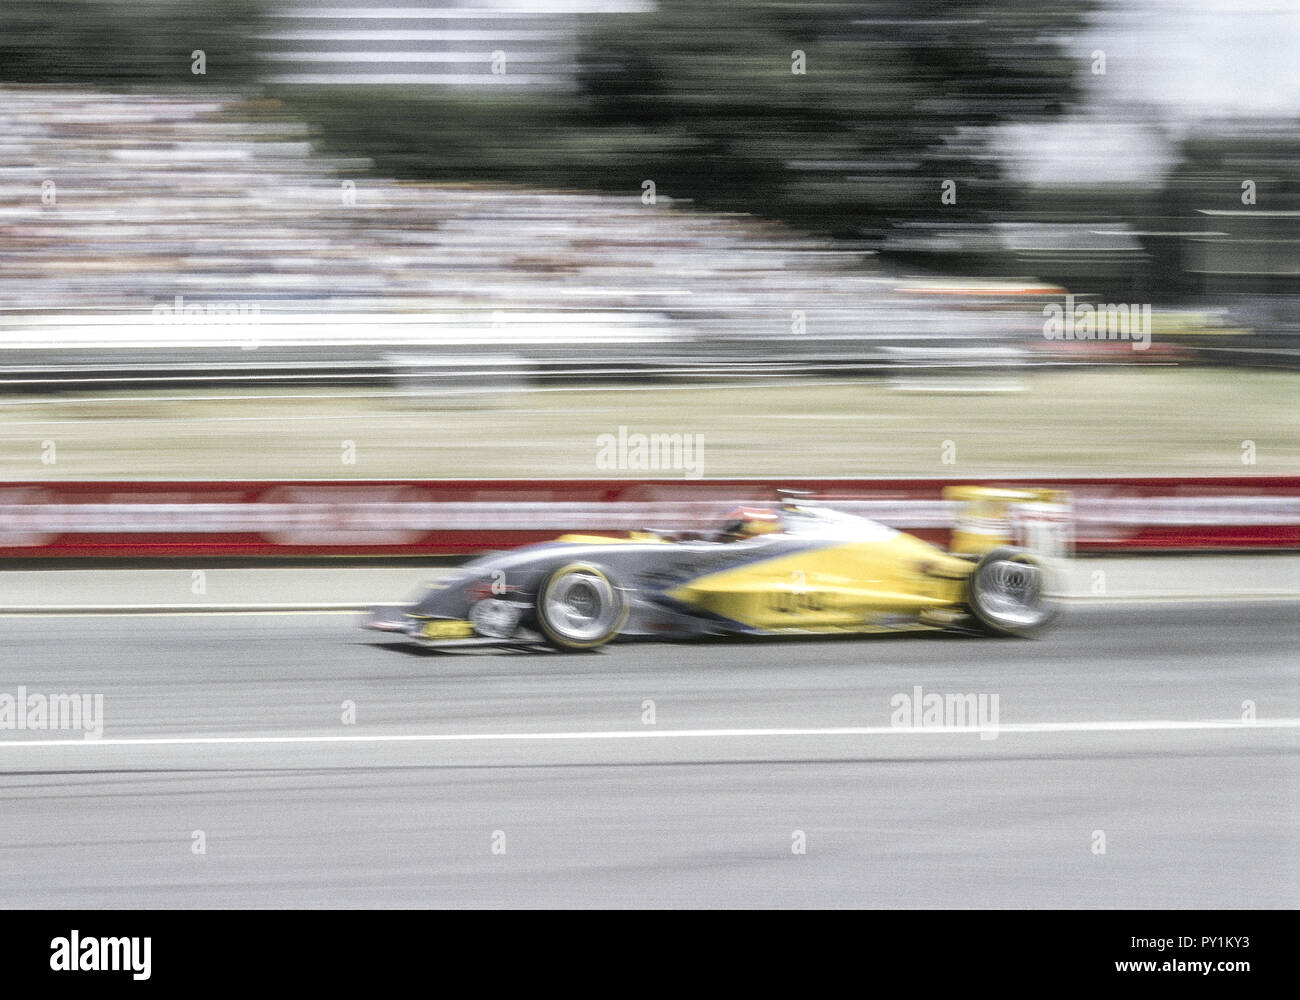 Formel-3 Rennwagen auf Rennstrecke, Bewegungsunschaerfe Stock Photo